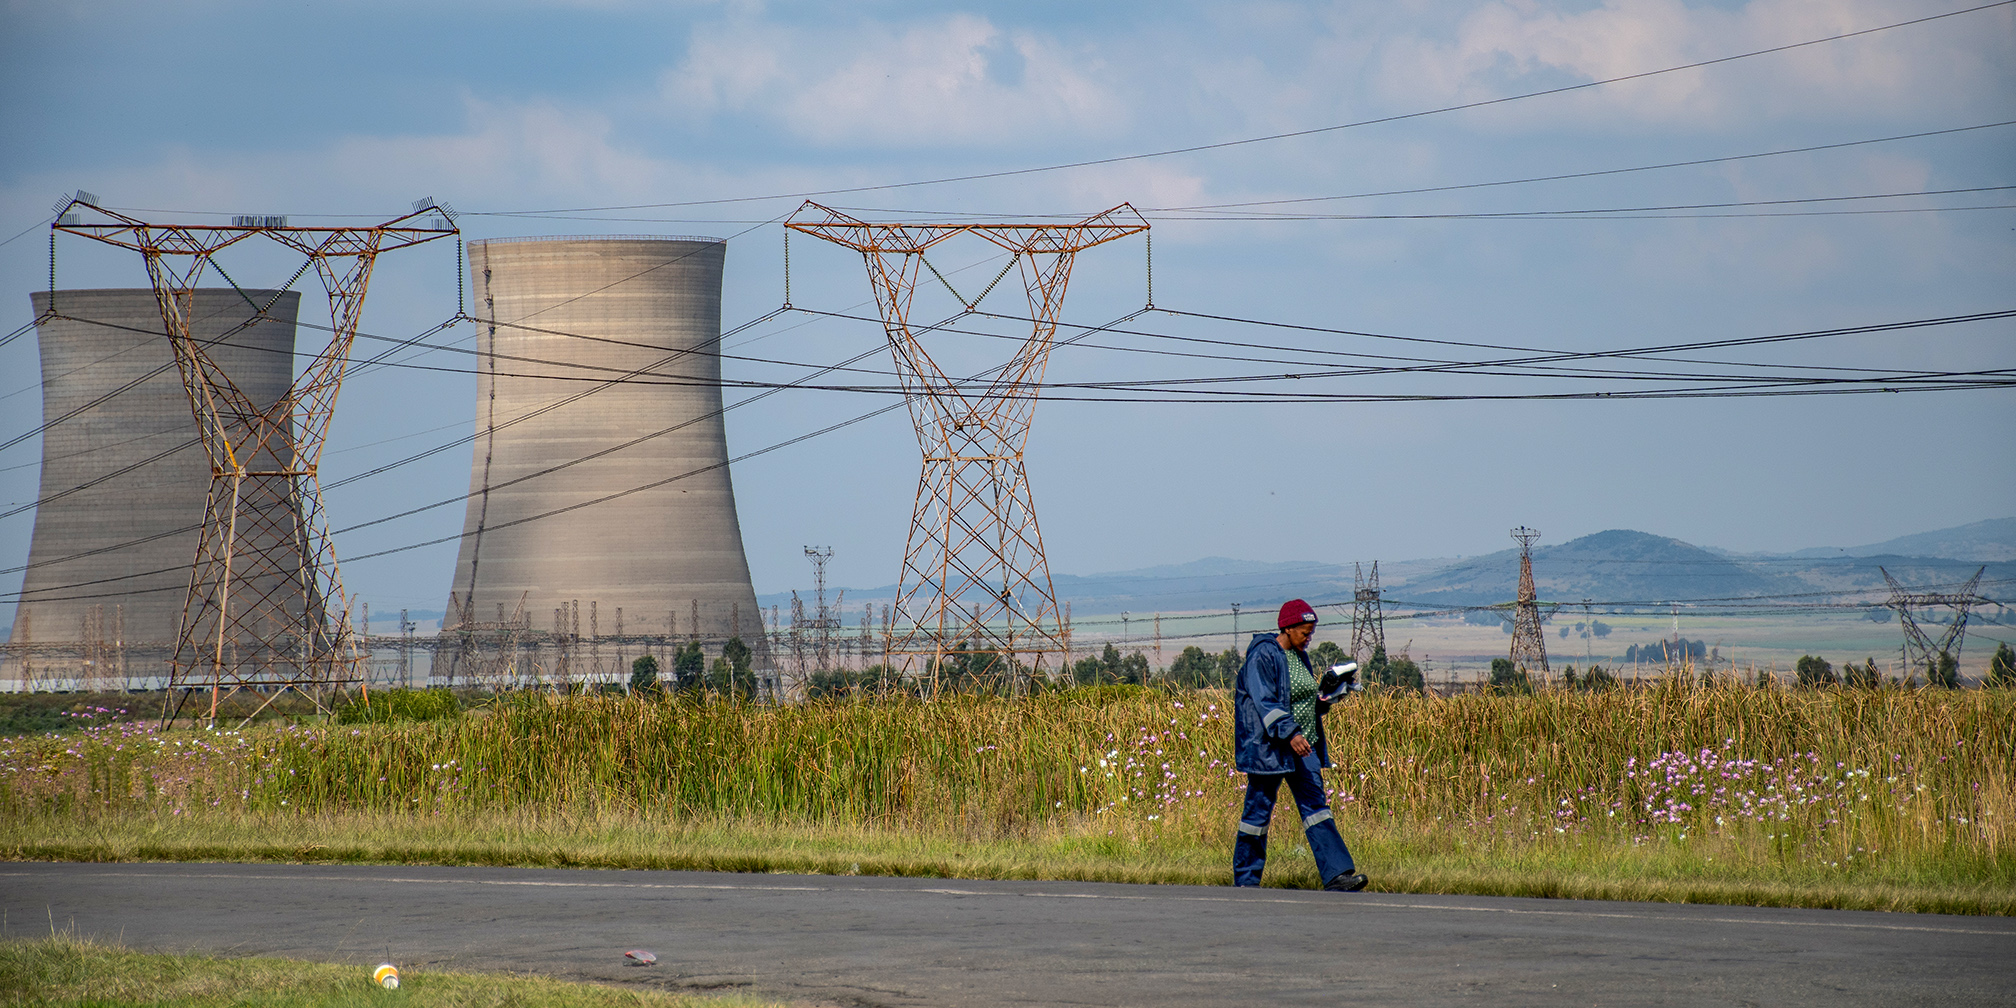 Grootvlei Power Station, Mpumalanga